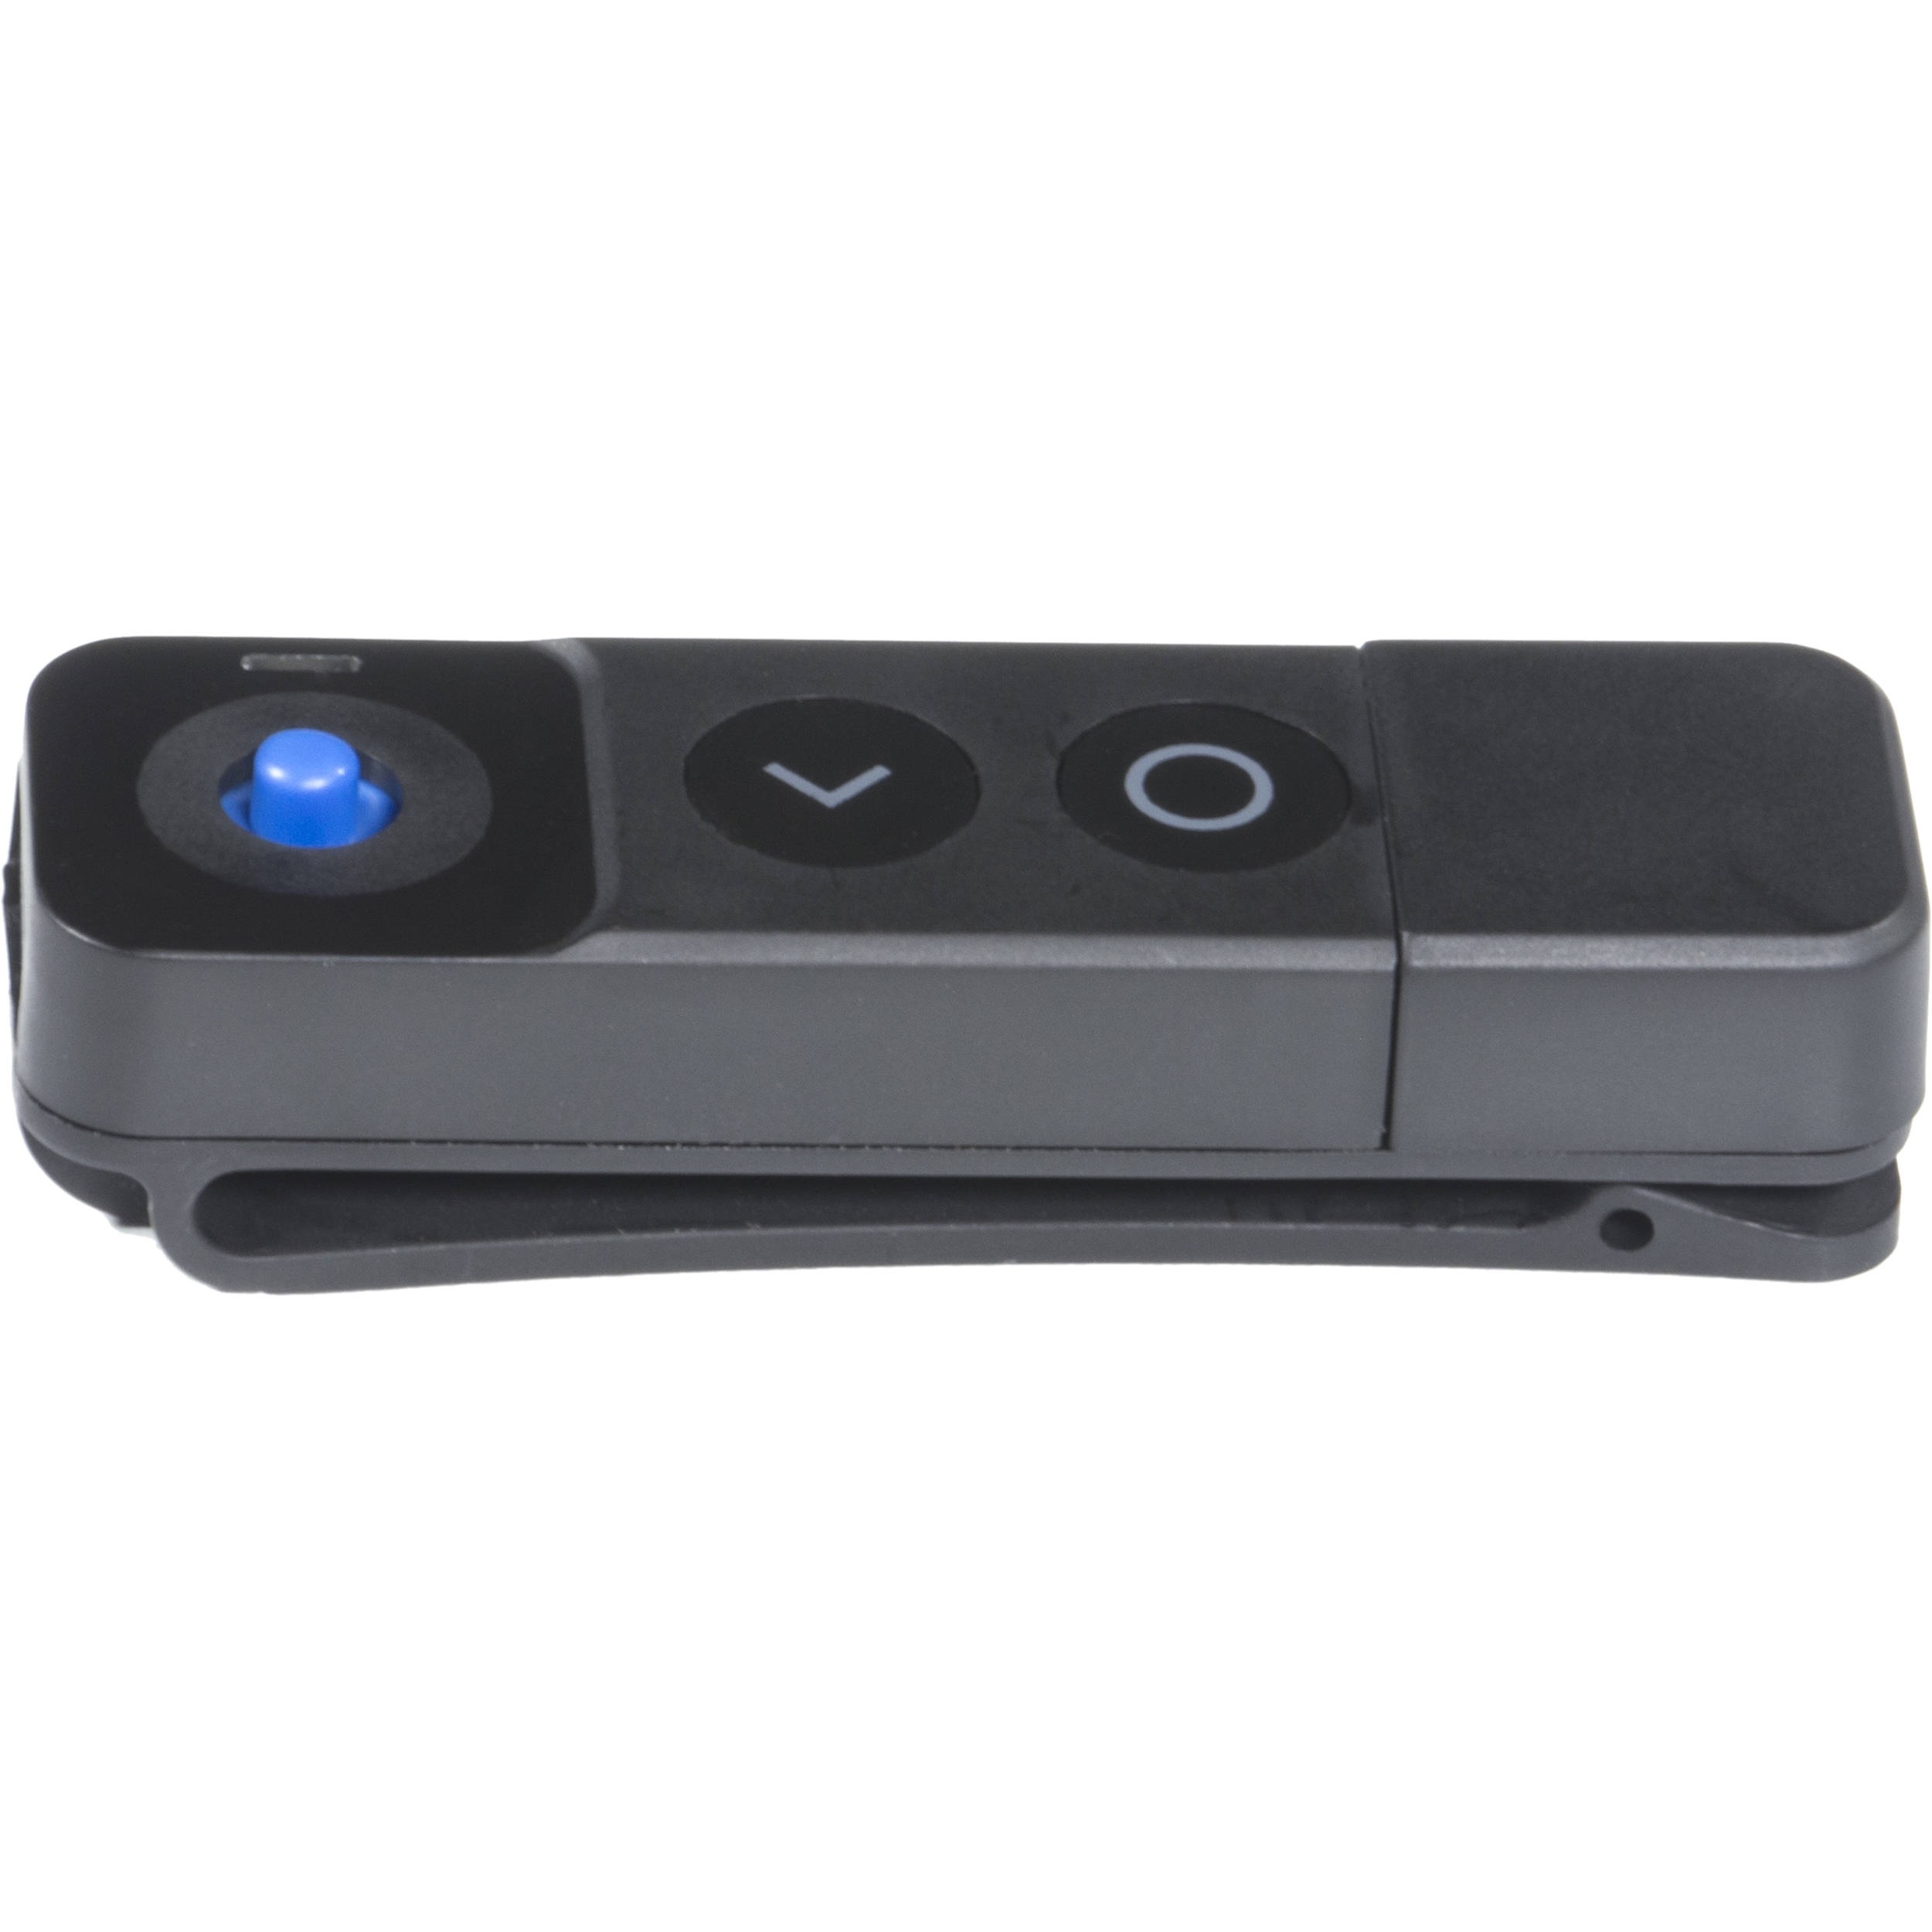 SmallHD BT-1 Wireless Remote Control for 500/700 Series Monitors